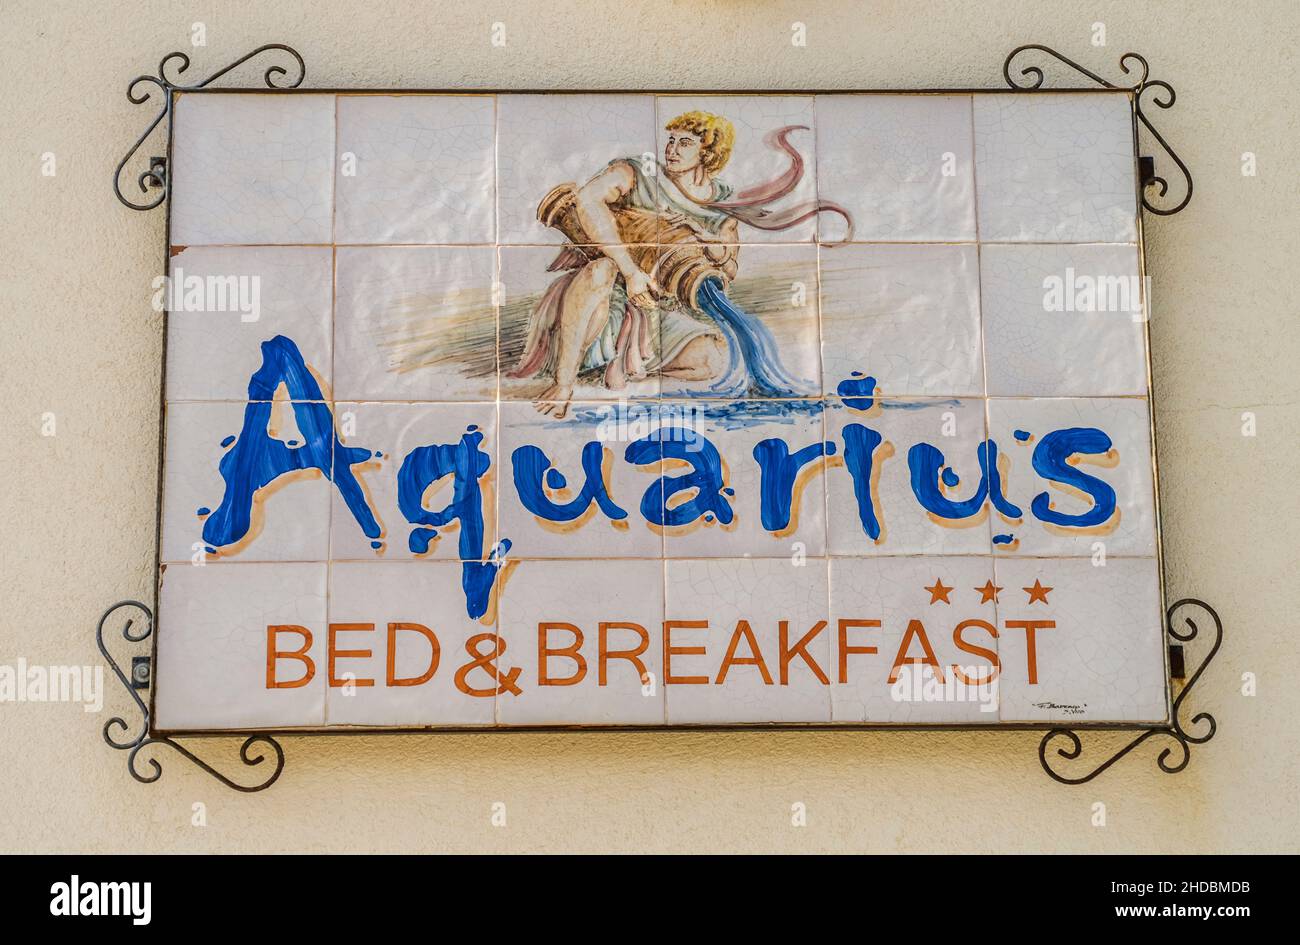 Werbeschild Hotel Aquarius, San Vito Lo Capo, Sizilien, Italien Foto de stock